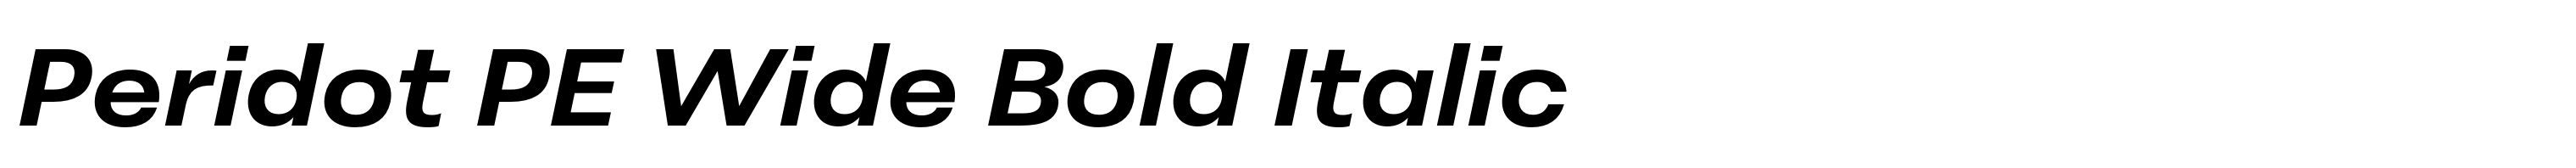 Peridot PE Wide Bold Italic